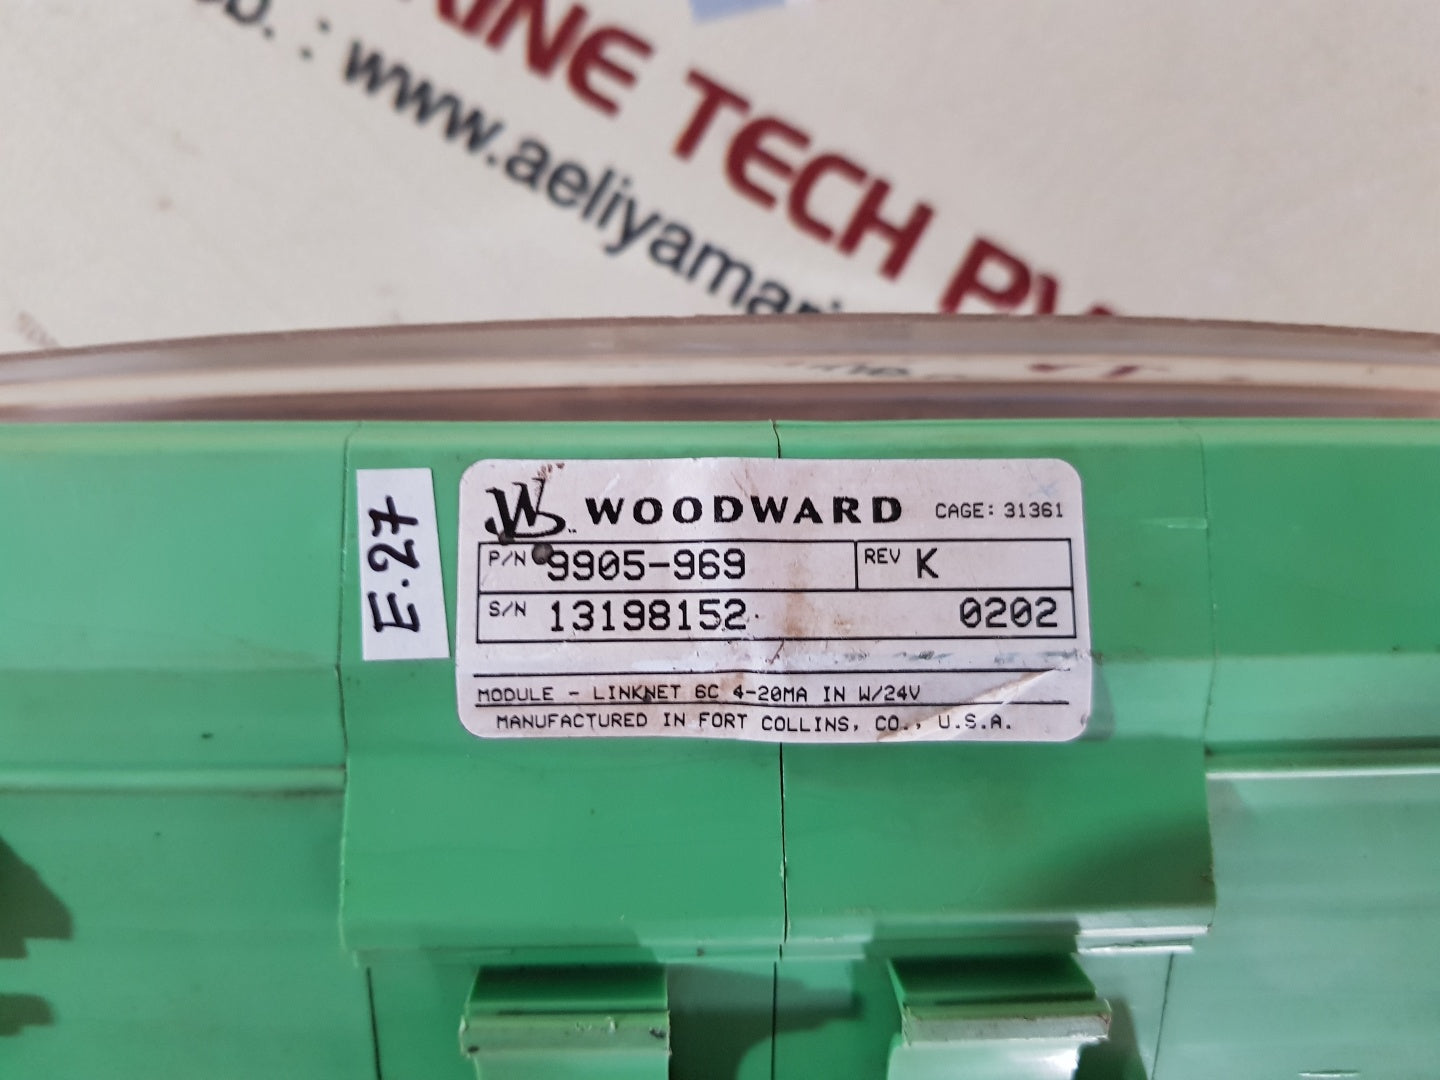 Woodward 9905-969 rev.k input module 6 channel